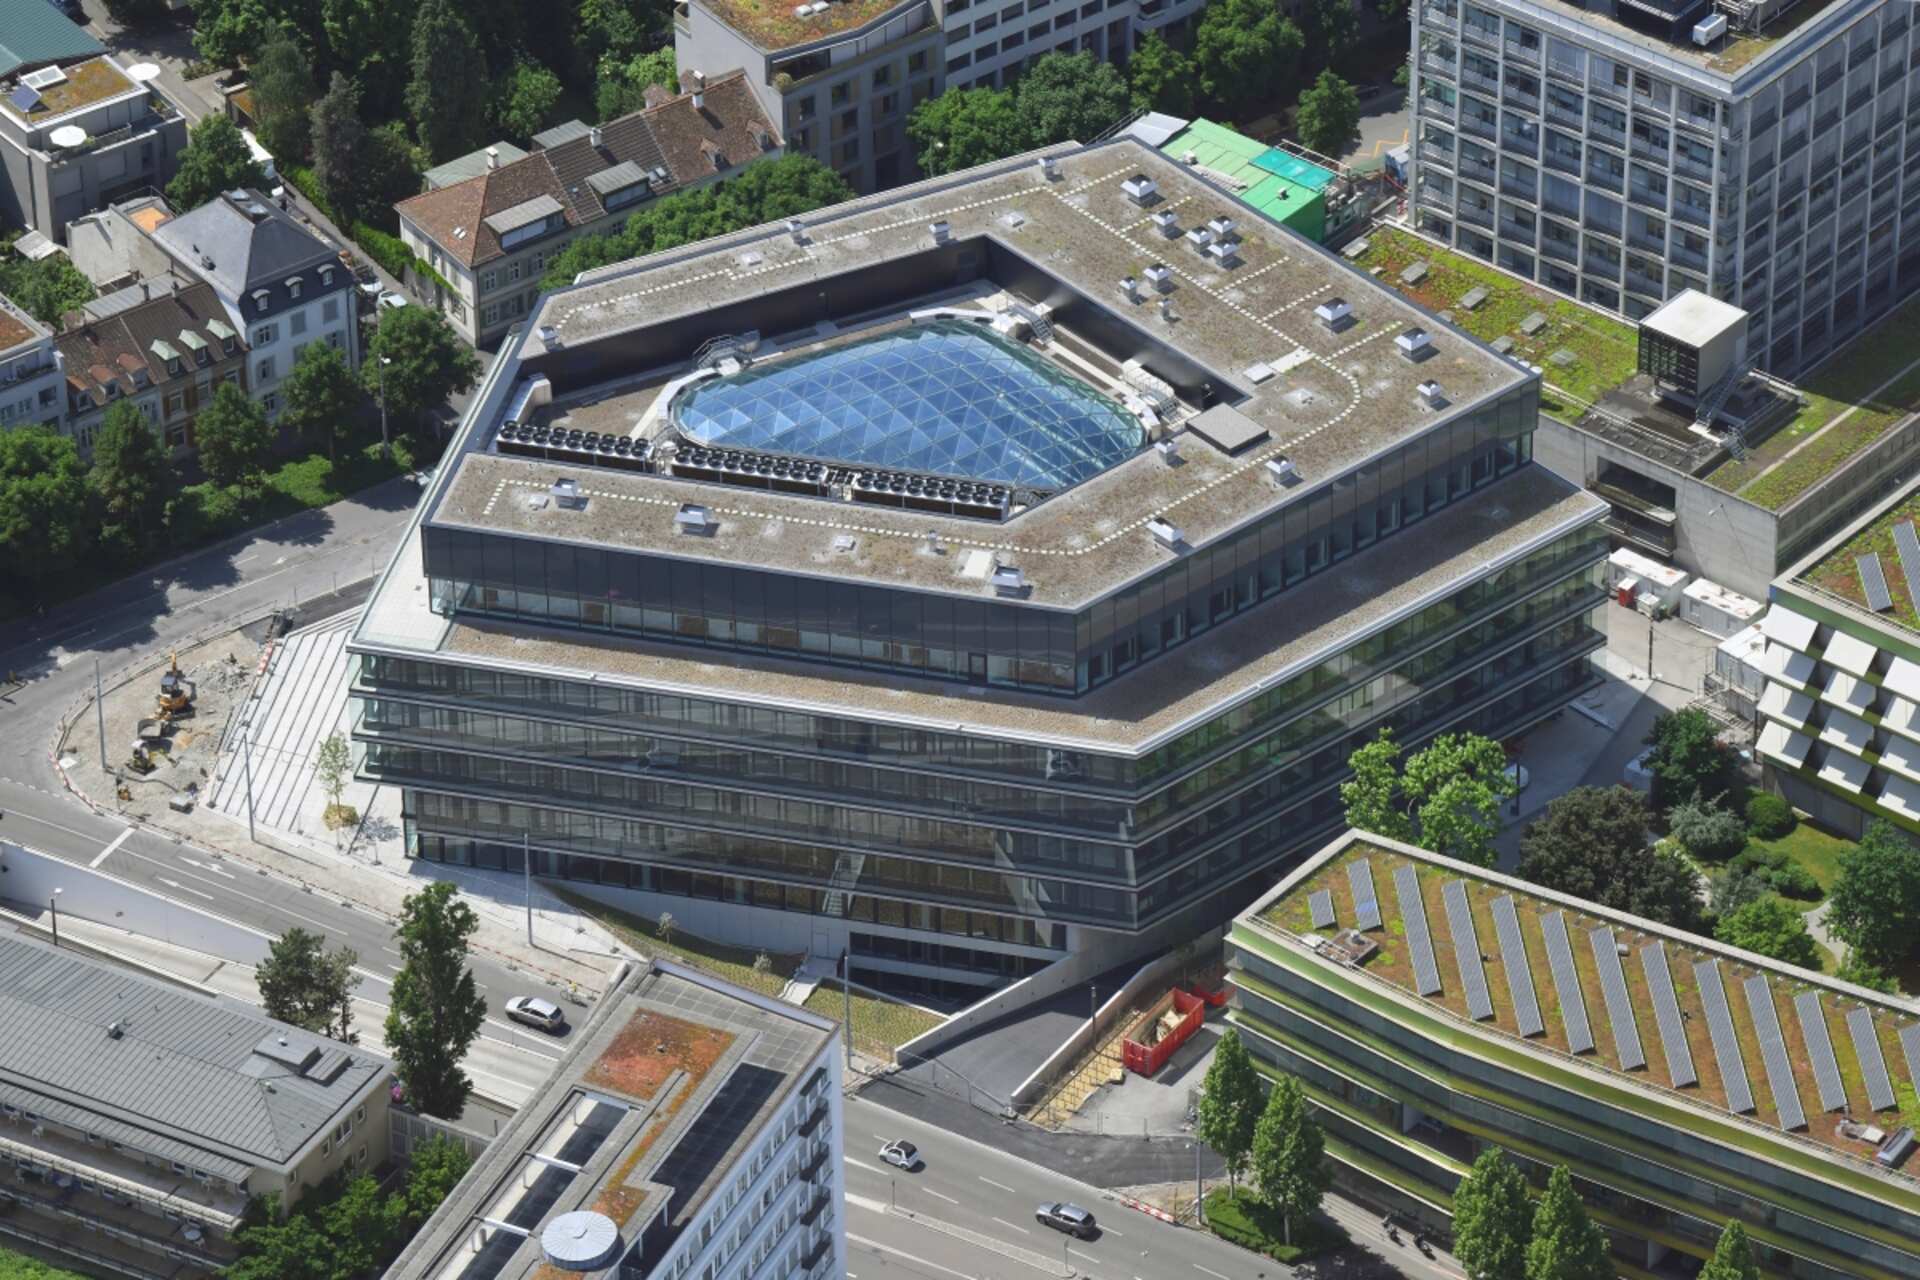 Inžinierska počítačová biológia: od matematickej teórie k bunkám ľudského tela vo výskume v budove BSS Federálneho technologického inštitútu v Zürichu v Bazileji